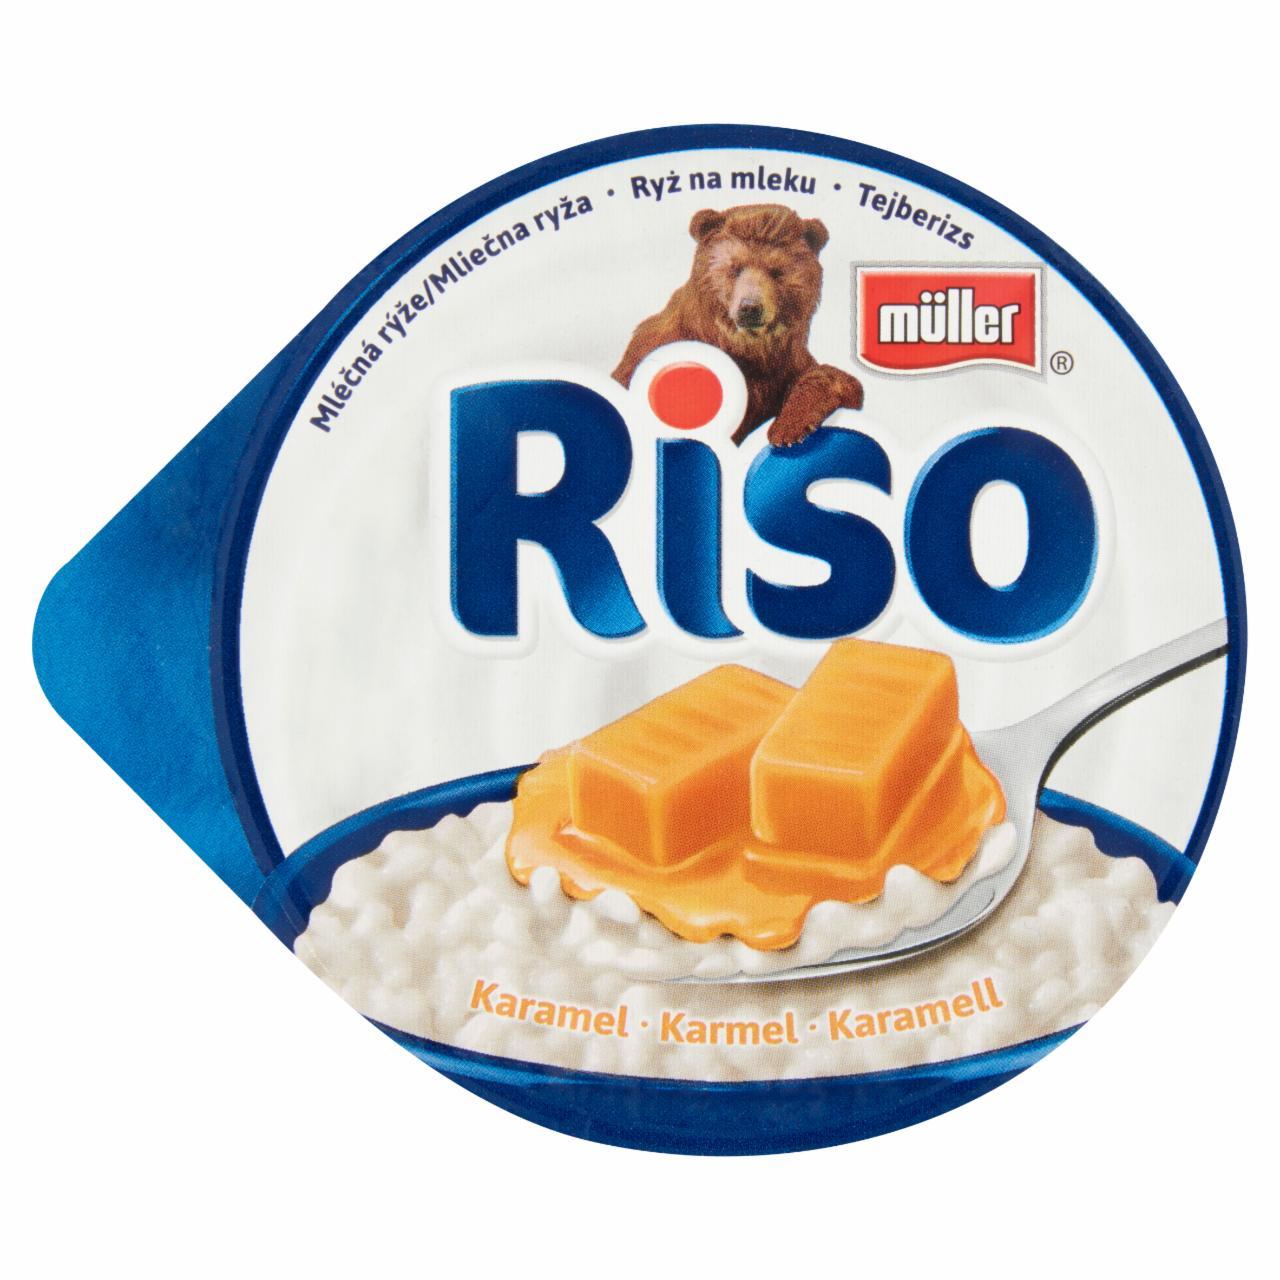 Képek - Müller Riso tejberizs desszert karamell készítménnyel 200 g